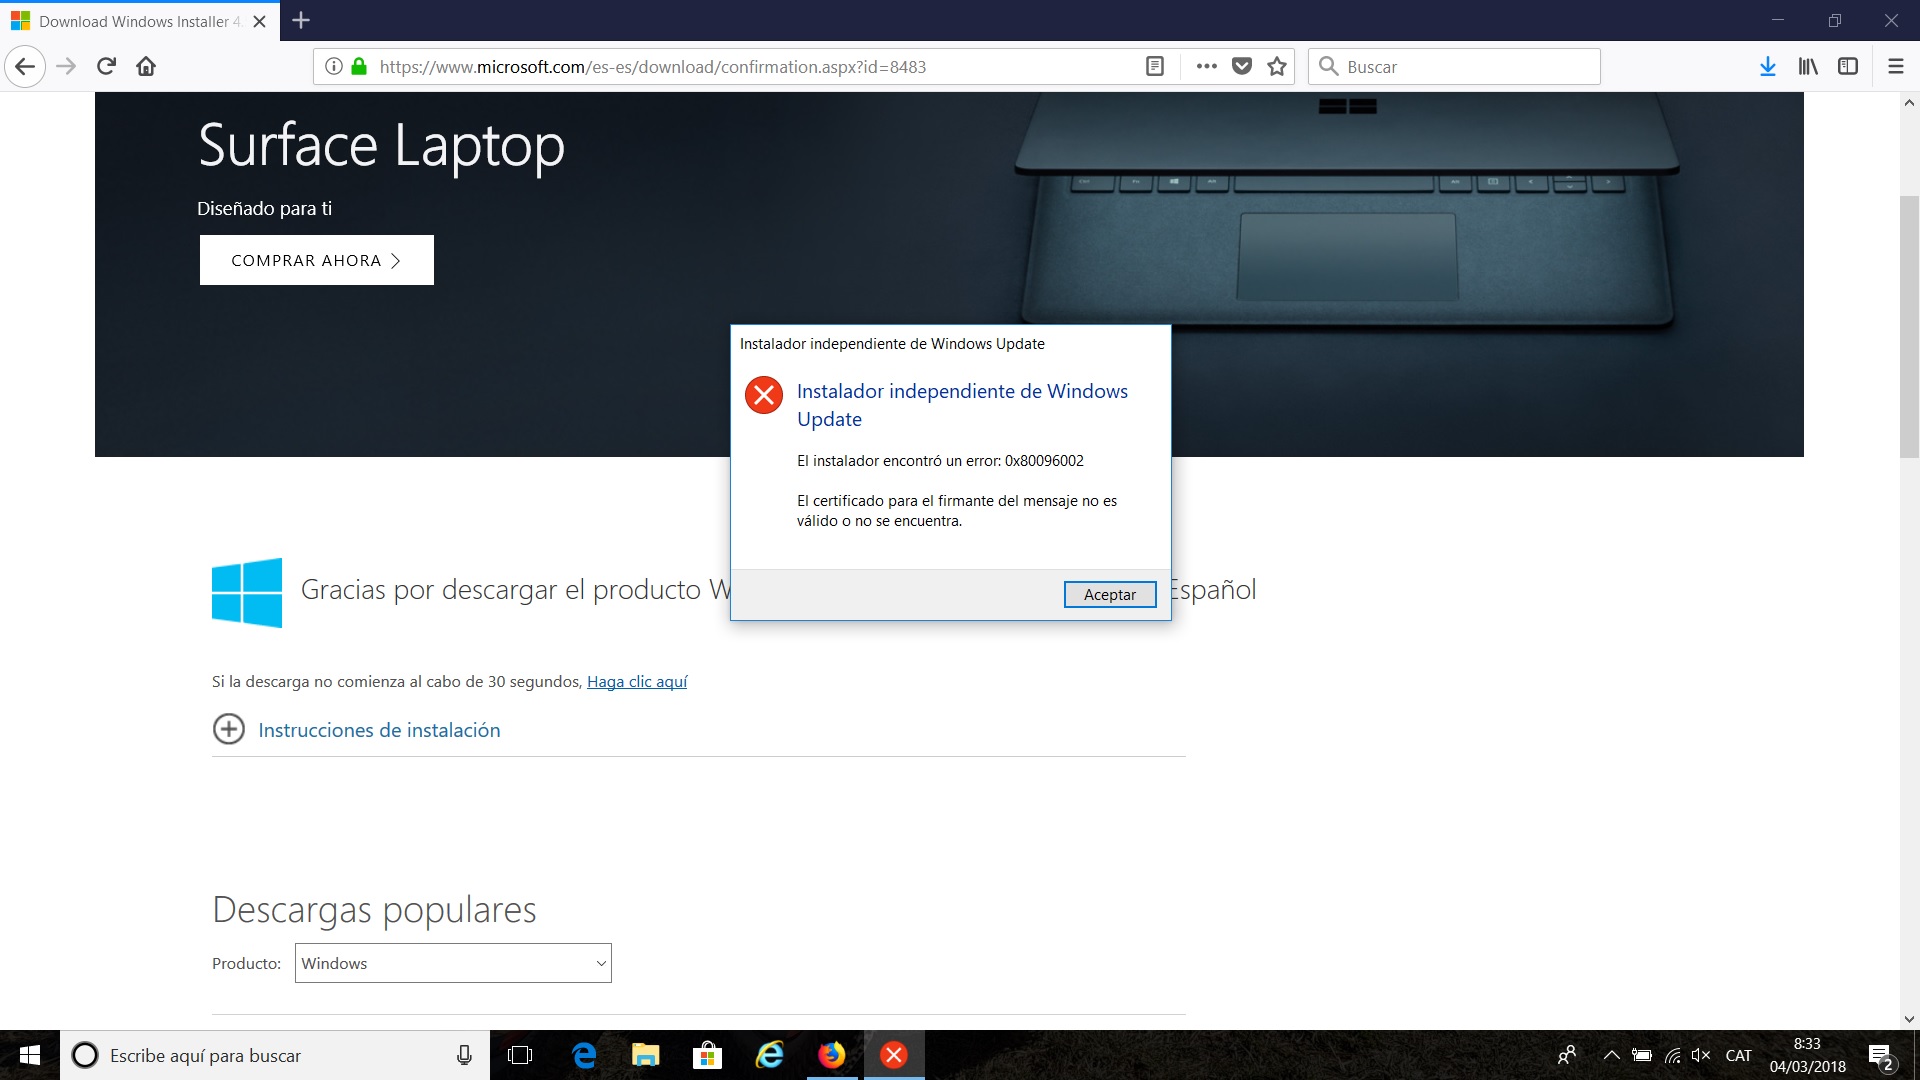 Windows 10 | El instalador encontró un error - Microsoft Community - Error Al Configurar Imagen De Cuenta Windows 10